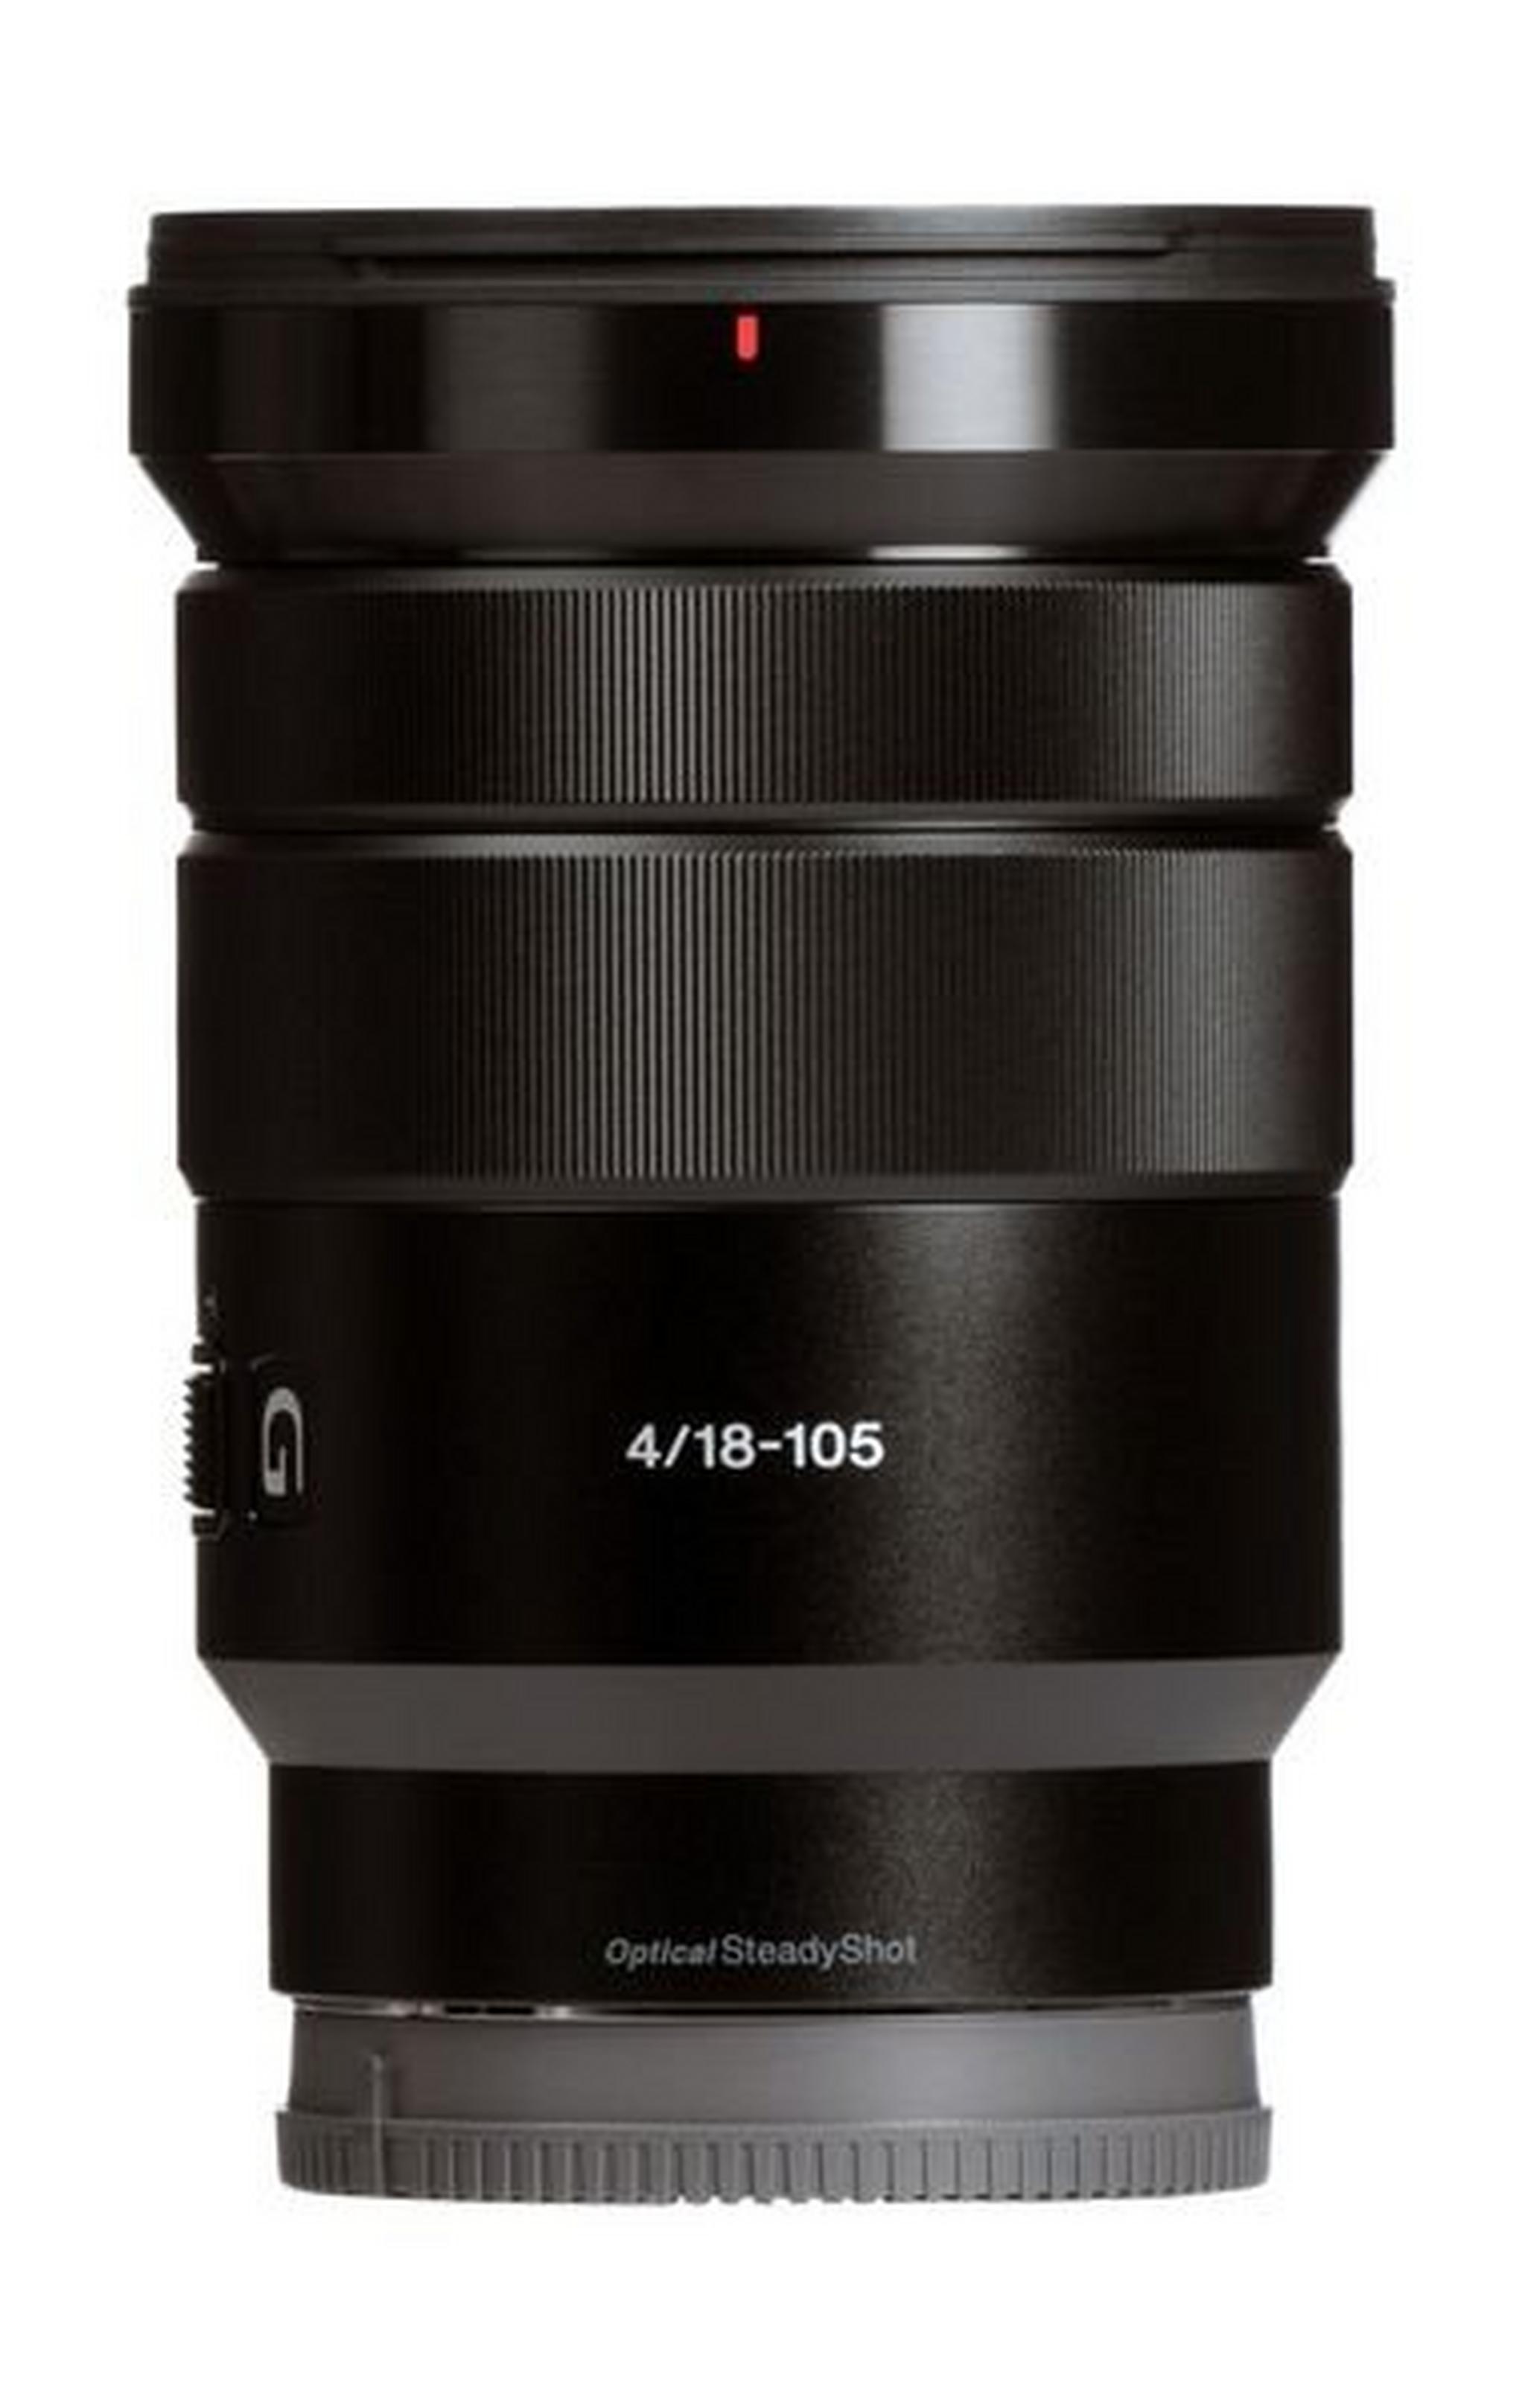 Sony 18-105mm f/4 Autofocus OSS Lens (SELP18105G) - Black